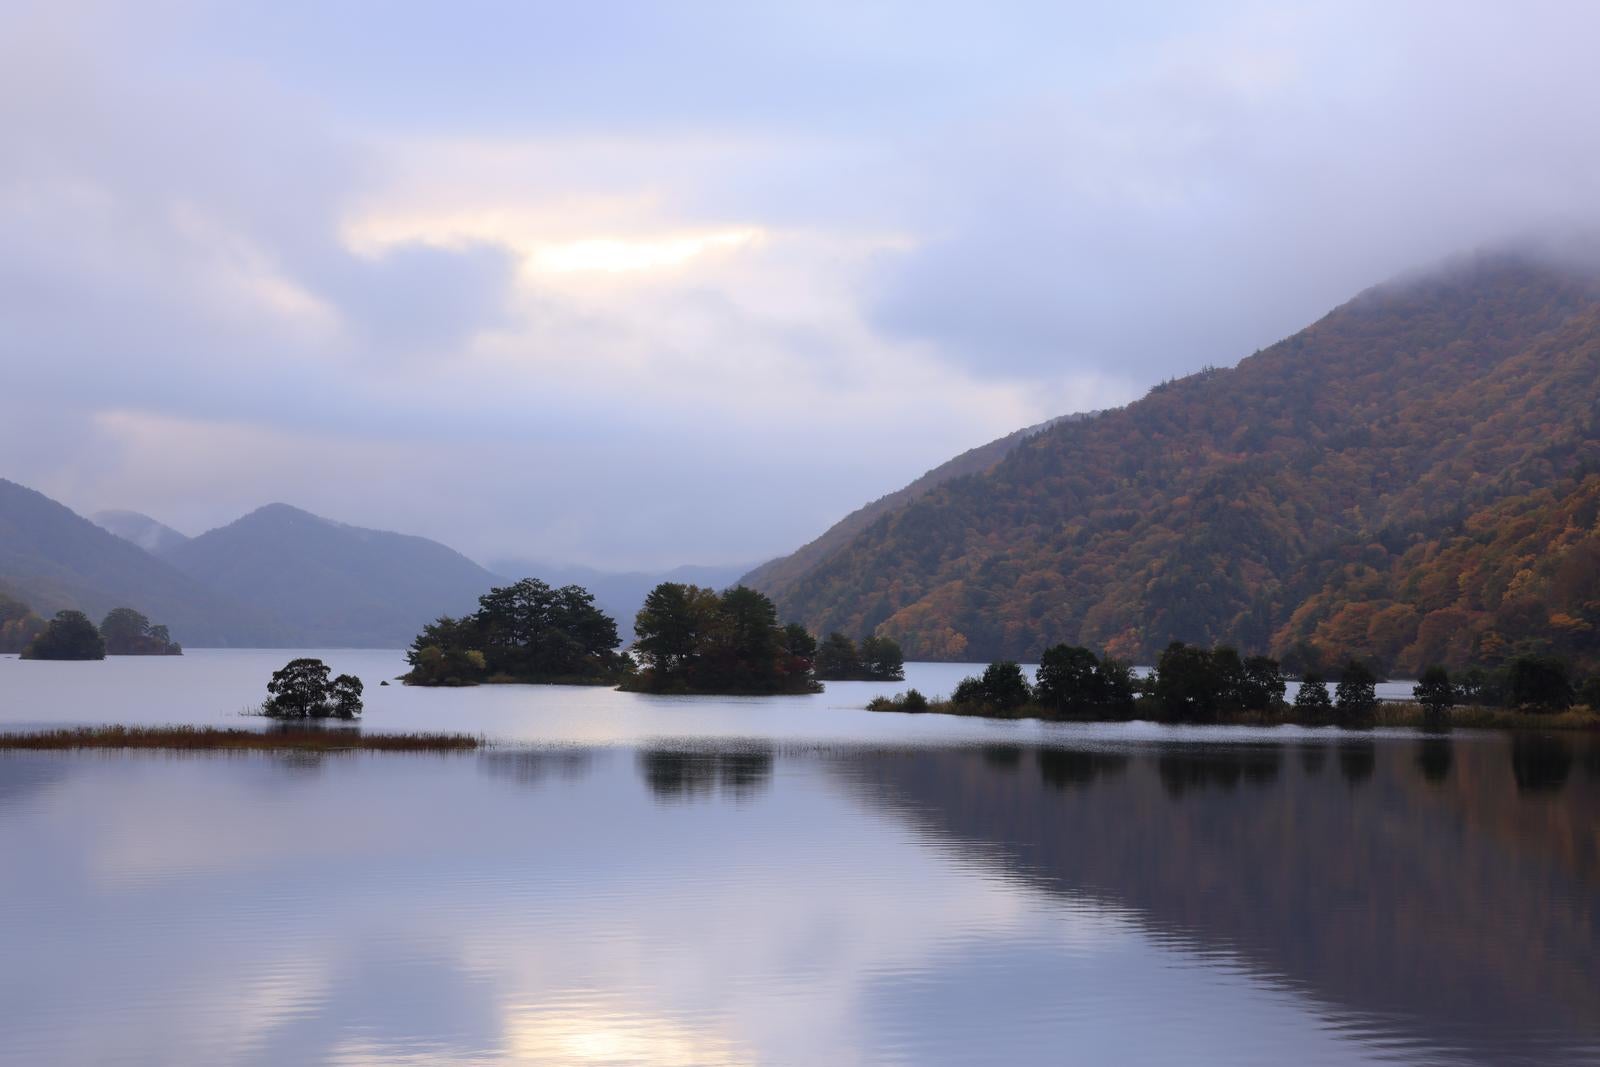 「湖面に映る静寂な美しさと雲間の朝焼けが照らす秋元湖」の写真